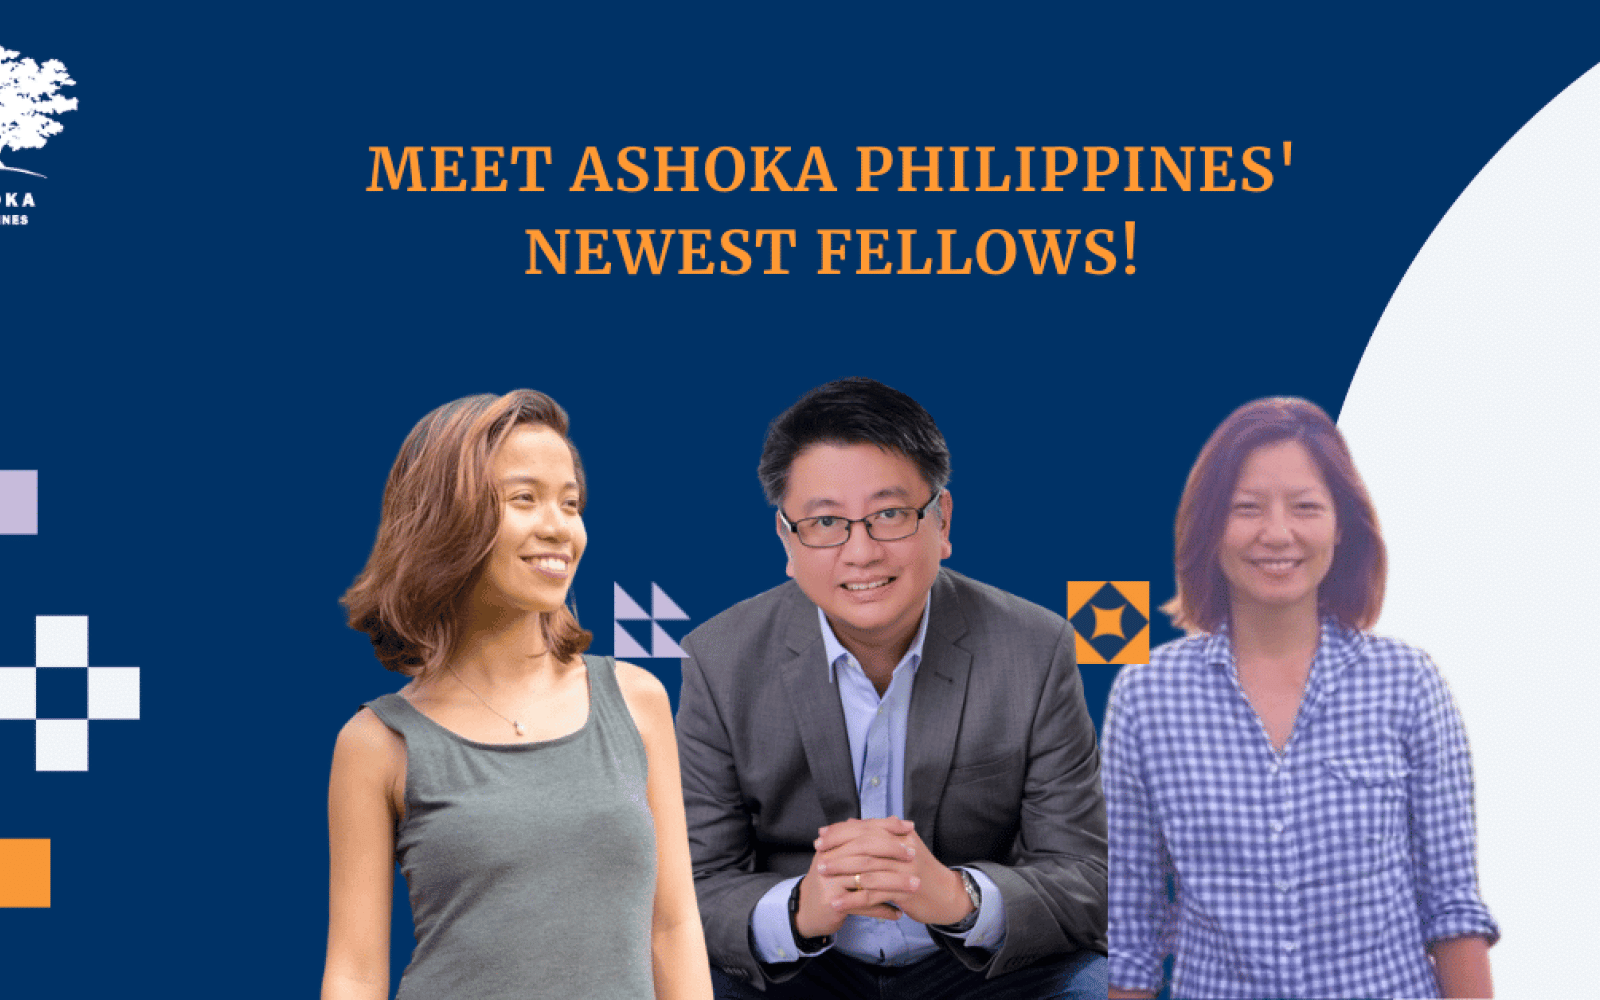 Photos of Ashoka Fellows Ann, Aldrin, Ayesha with the text "Meet Ashoka Philippines' Newest Fellows!"